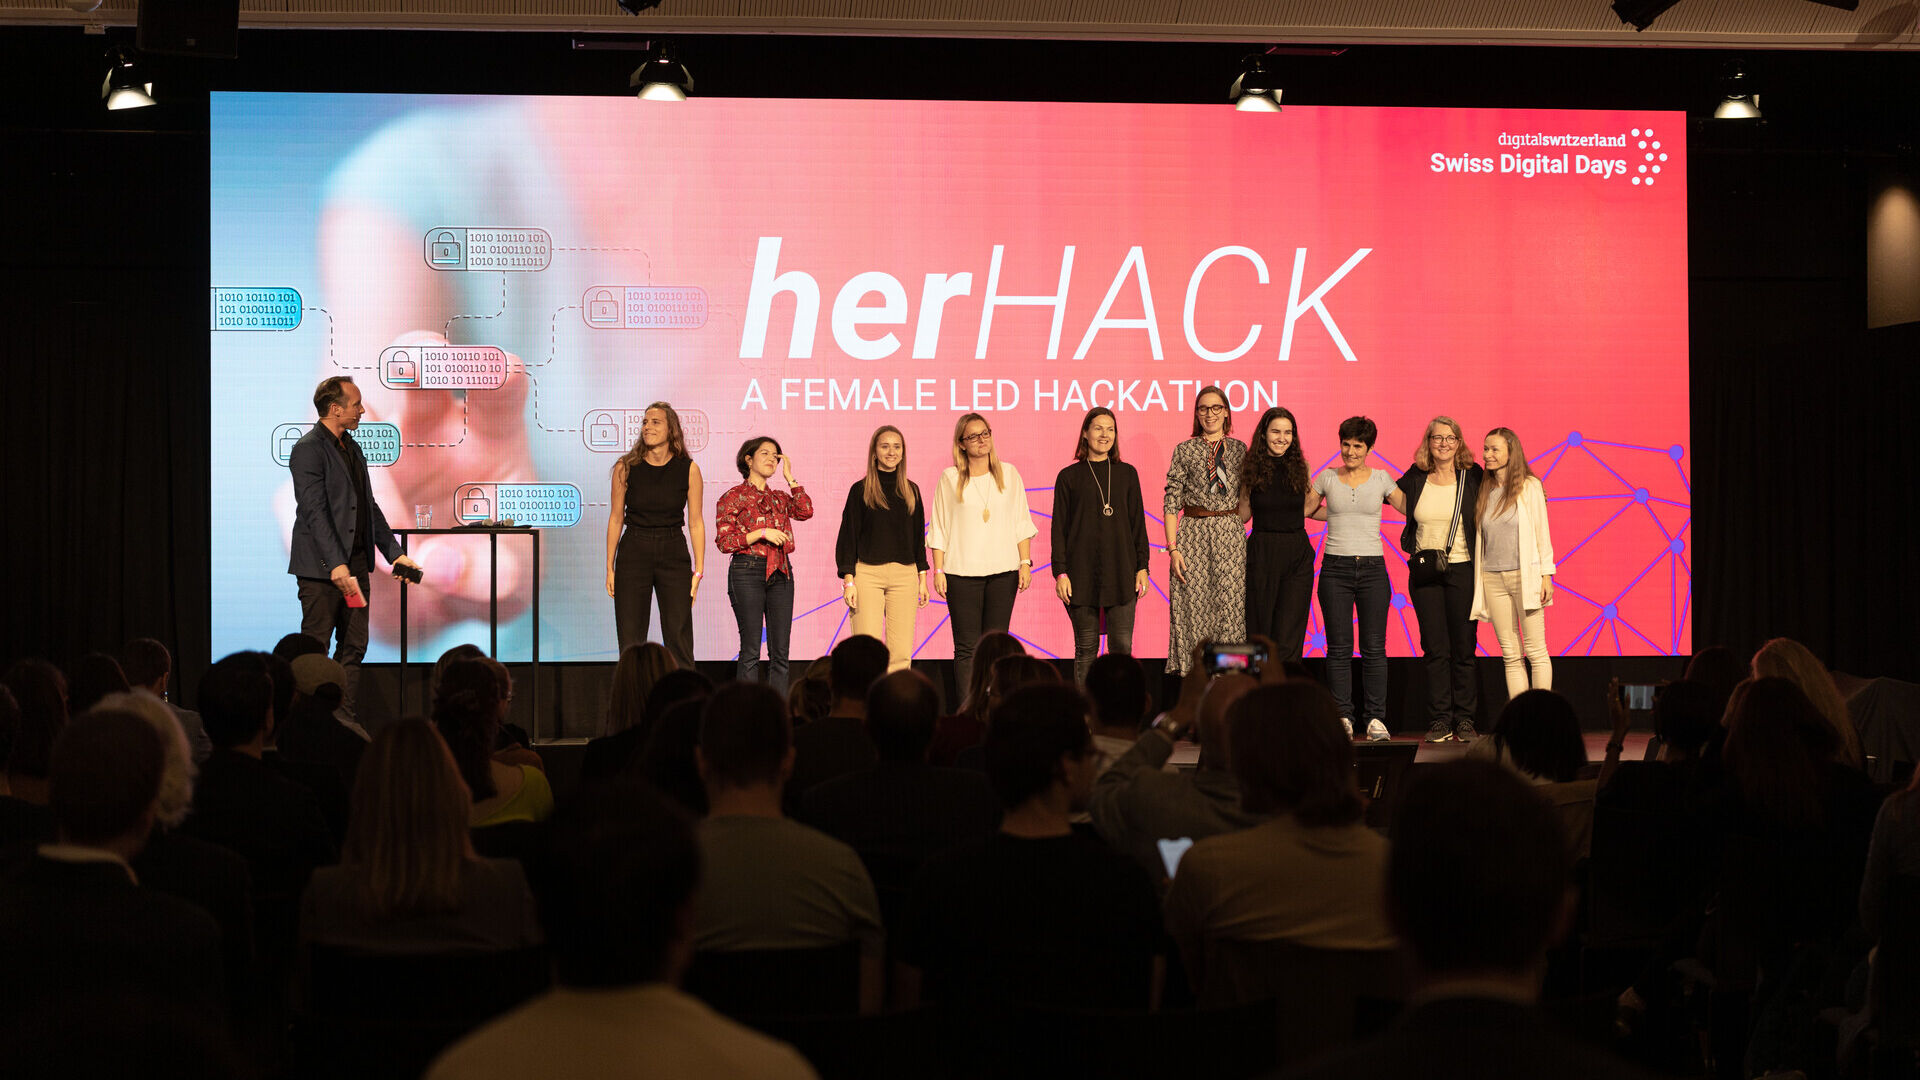 Swiss Digital Days: o evento final dos "Swiss Digital Days" 2022 no Freiruum em Zug (Zug) em 27 de outubro: a cerimônia de premiação do hackathon feminino "herHACK" com a vitória de Greender